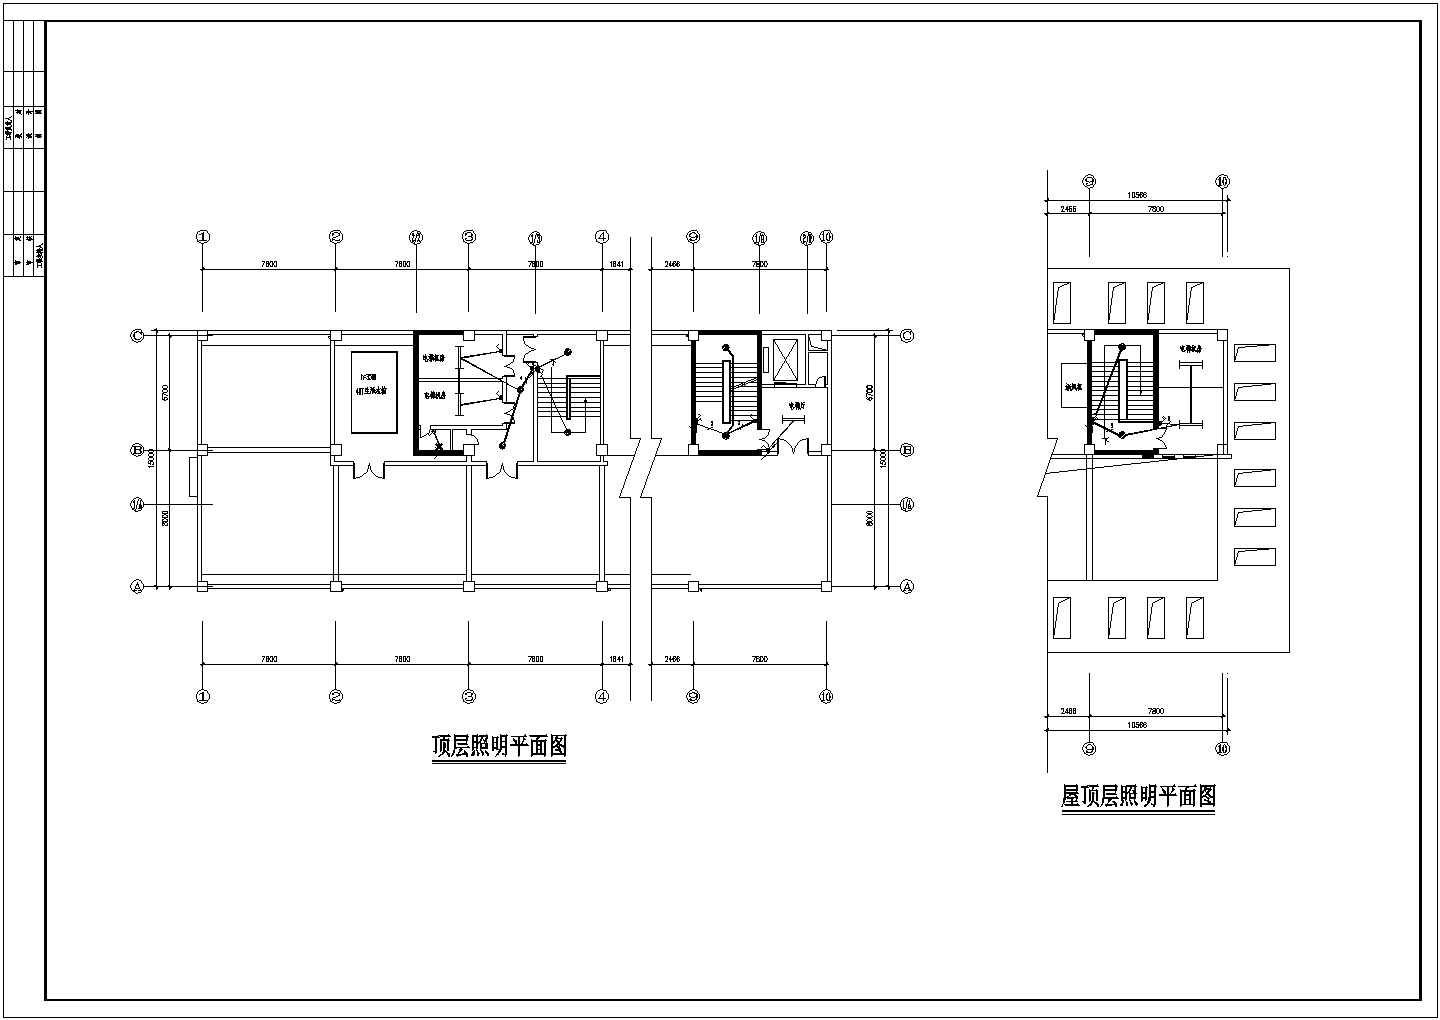 全套医院综合楼建筑电气工程设计图纸-38